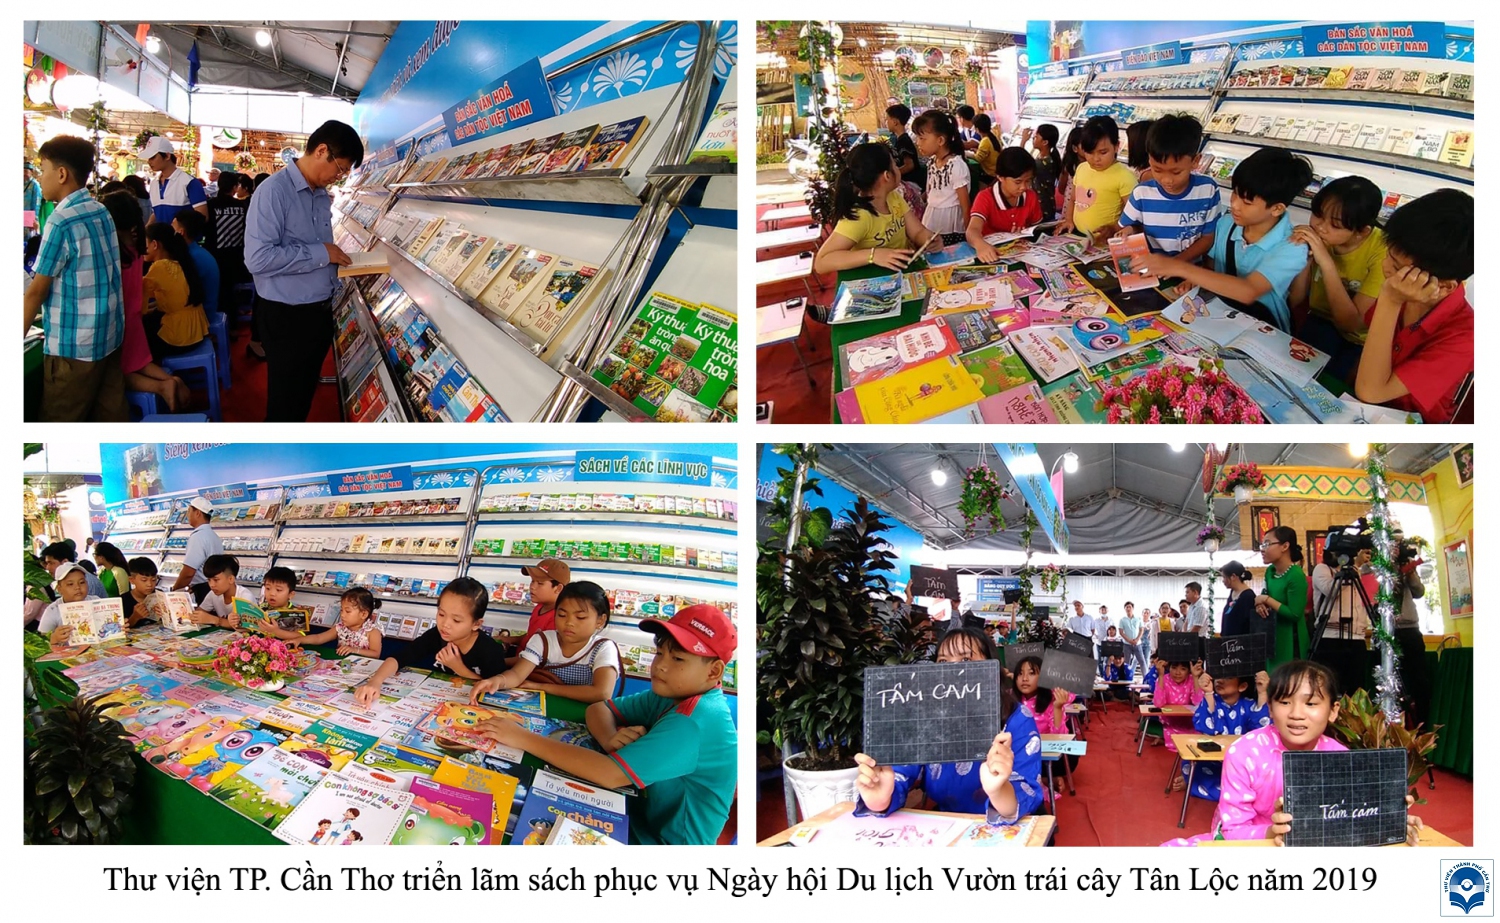 Hoạt động phục vụ sách - báo tại Ngày hội Du lịch vườn trái cây Tân Lộc năm 2019